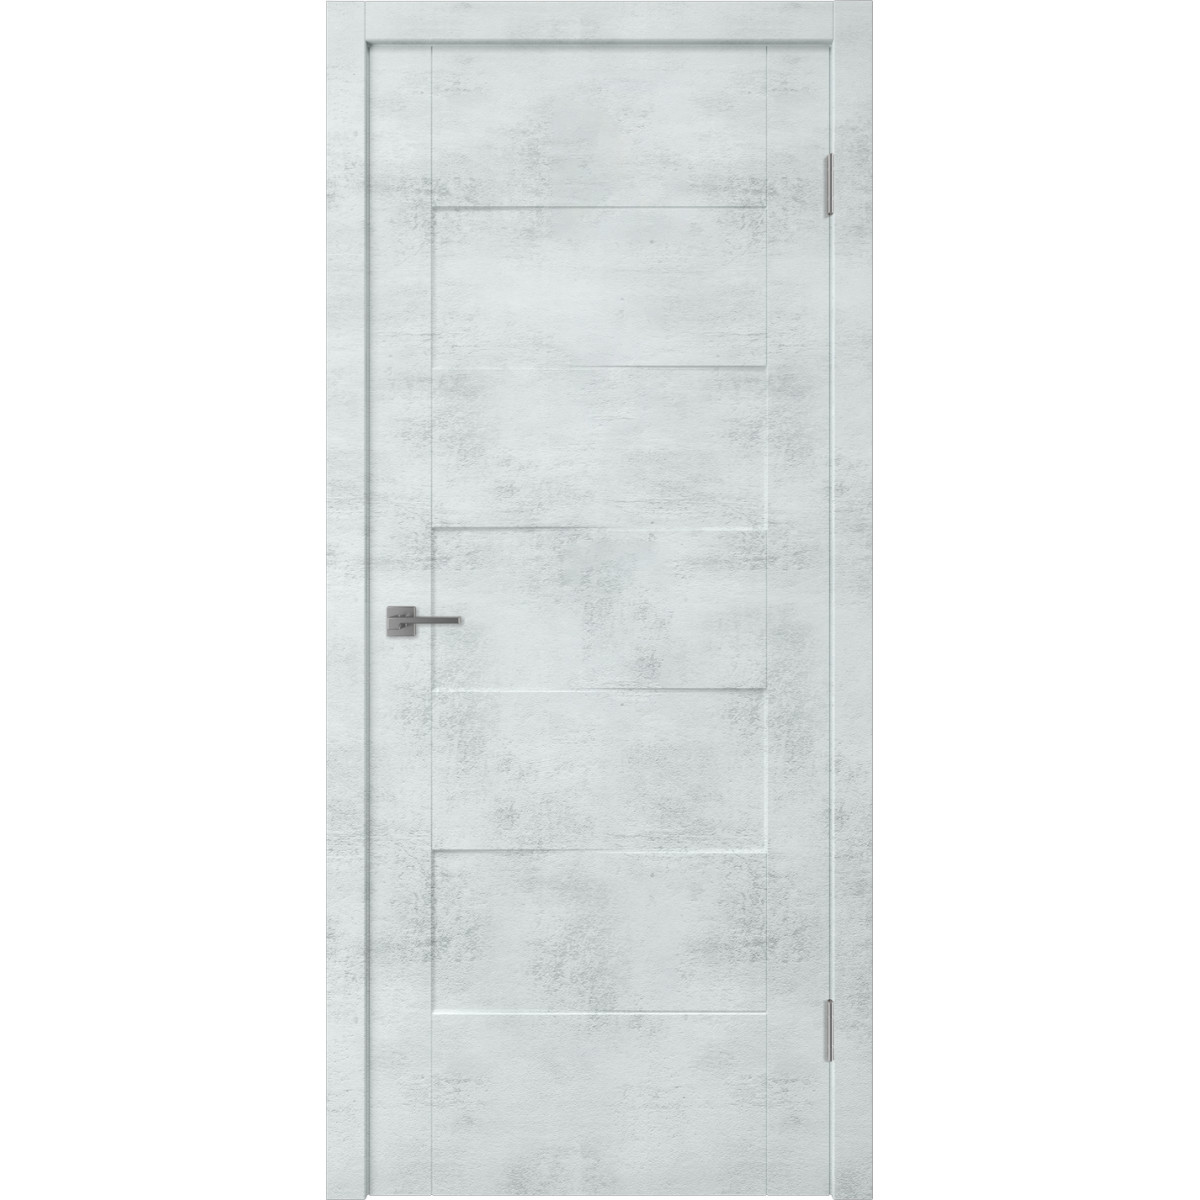 Дверь межкомнатная Фокус 90х200 см с фурнитурой, ПВХ, цвет голубой лофт